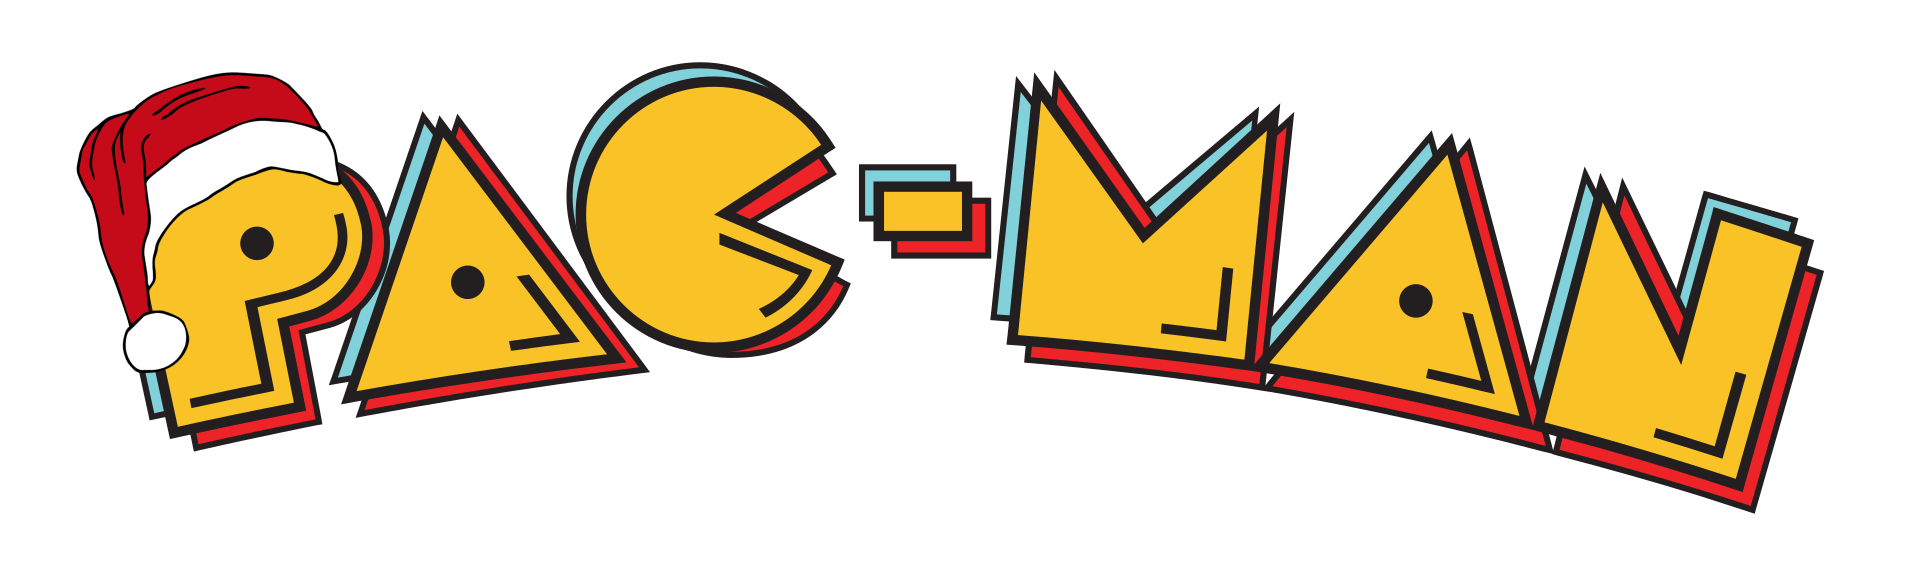 Logo Pac-Man